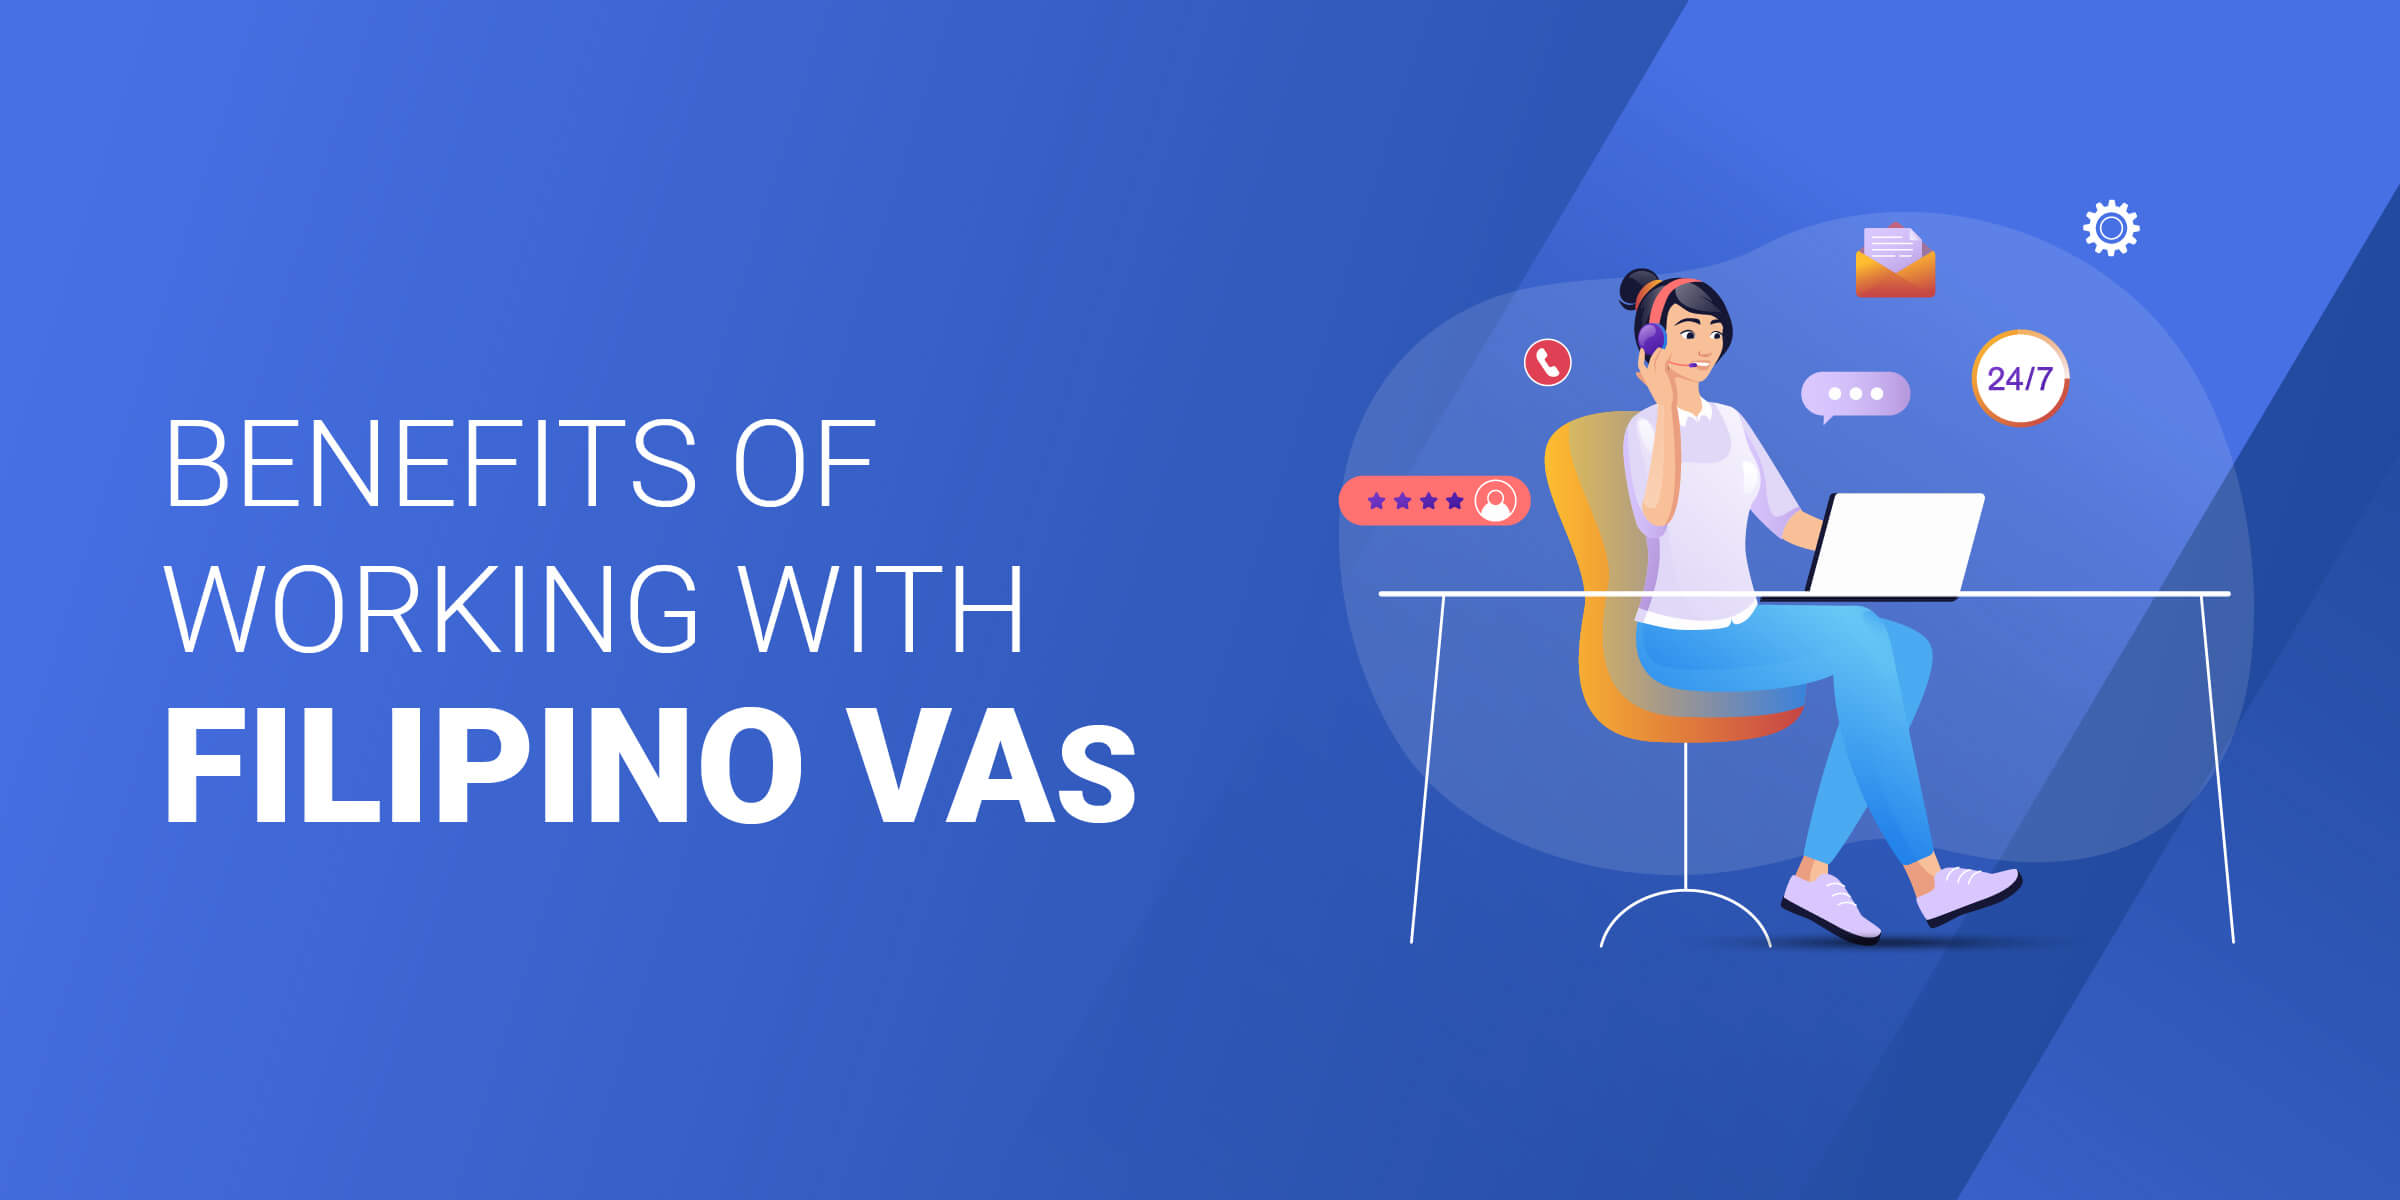 Benefits of Working with Filipino VAs